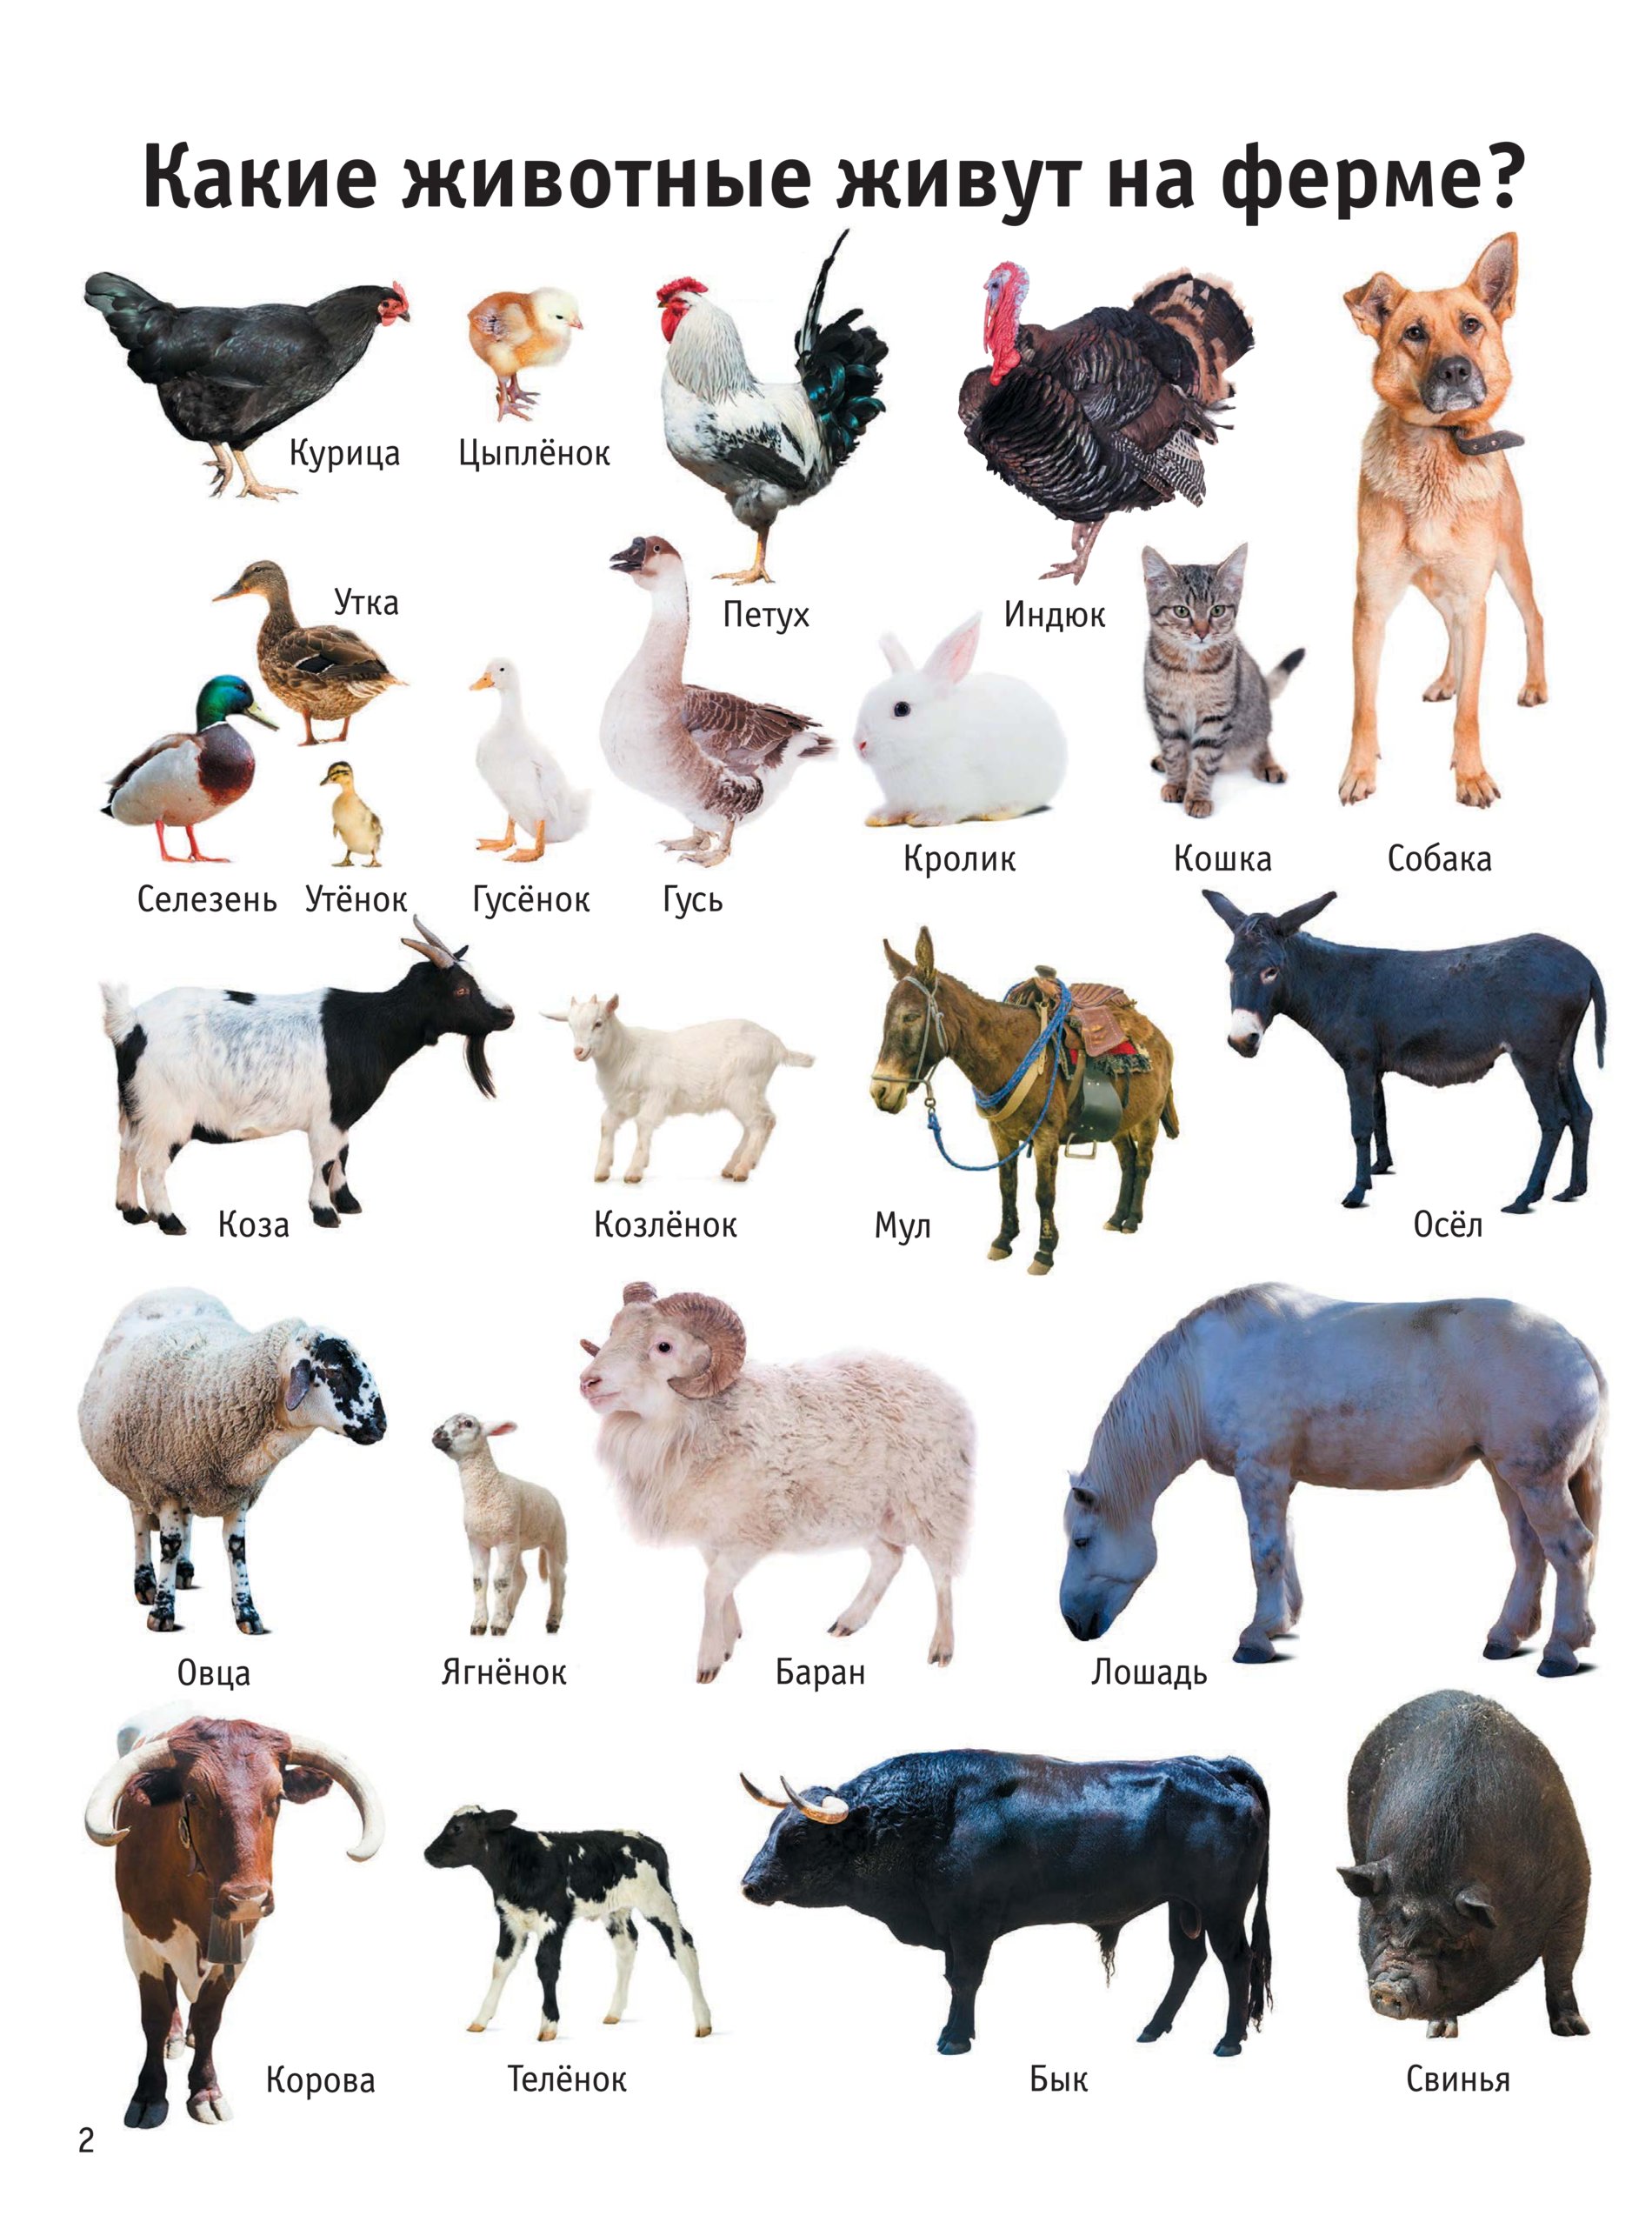 Названия кличек животных. Домашние животные. Домашние животные список. Название домашних жывотны. Названия домашних живот.